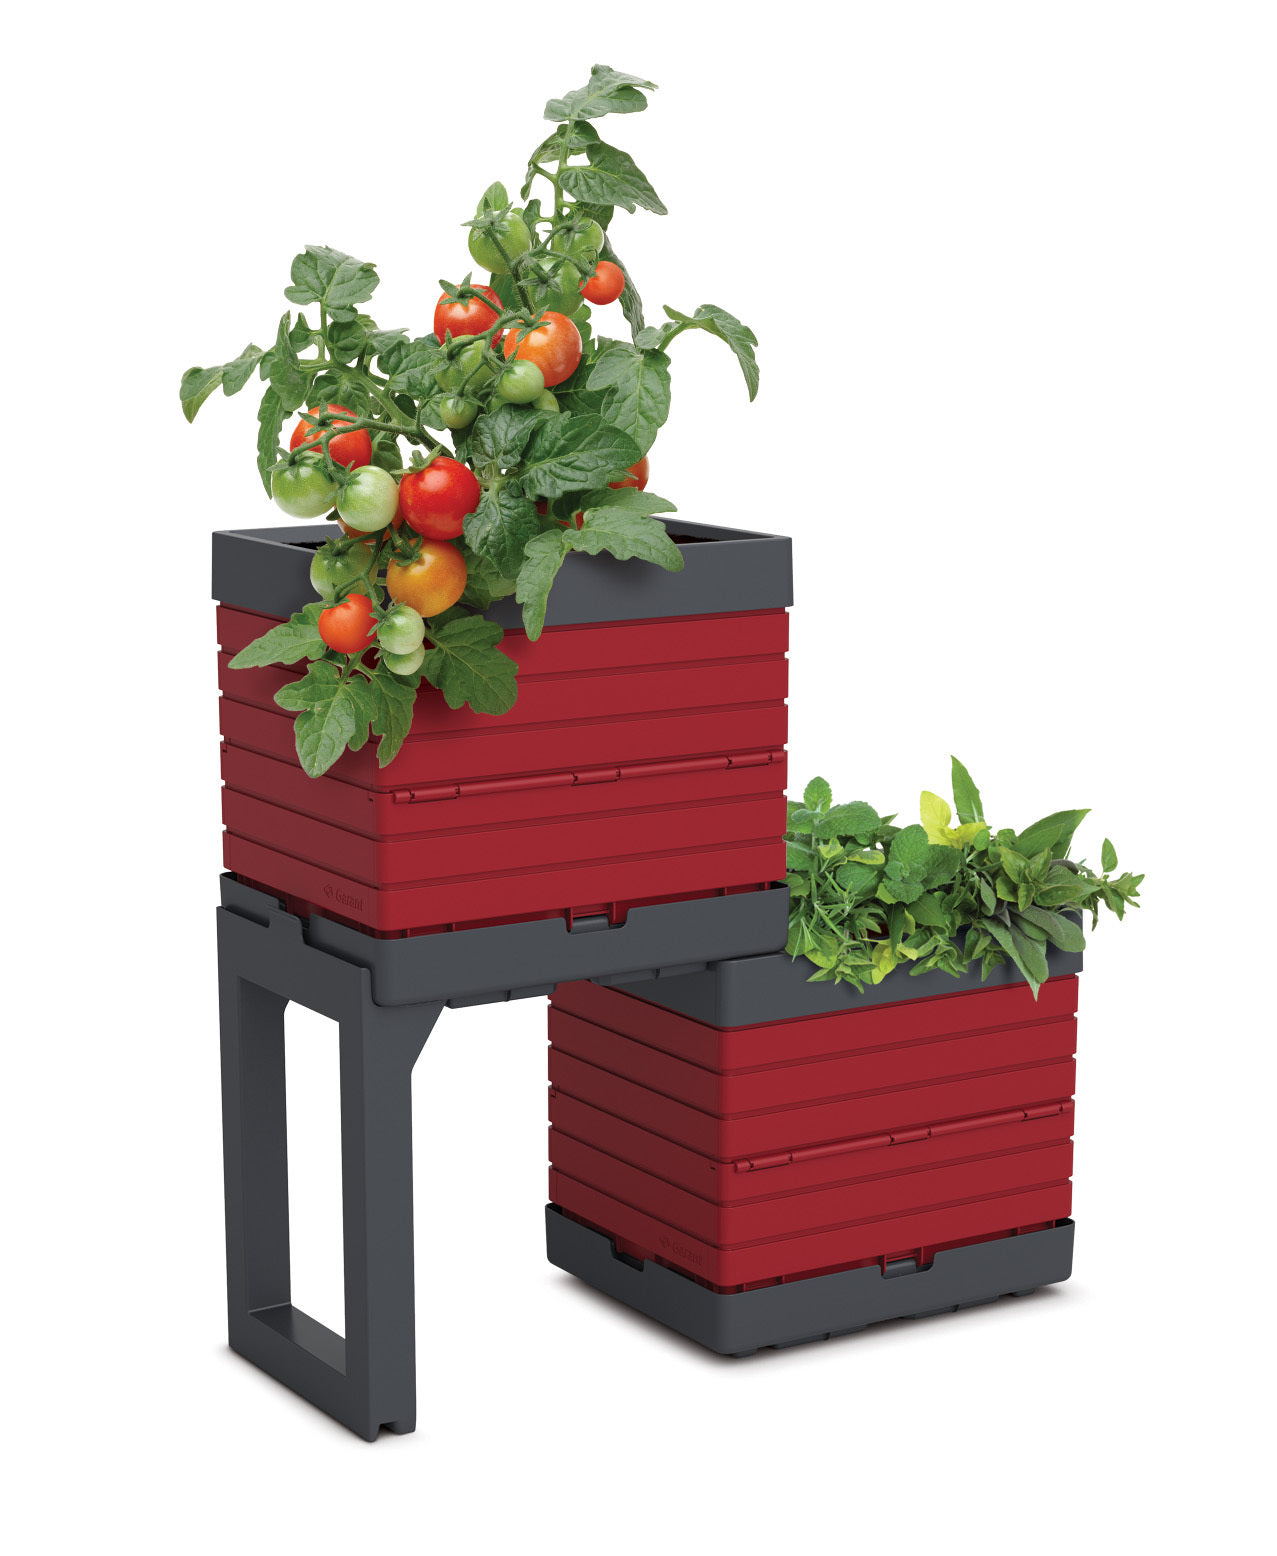 Individual planter for modular garden